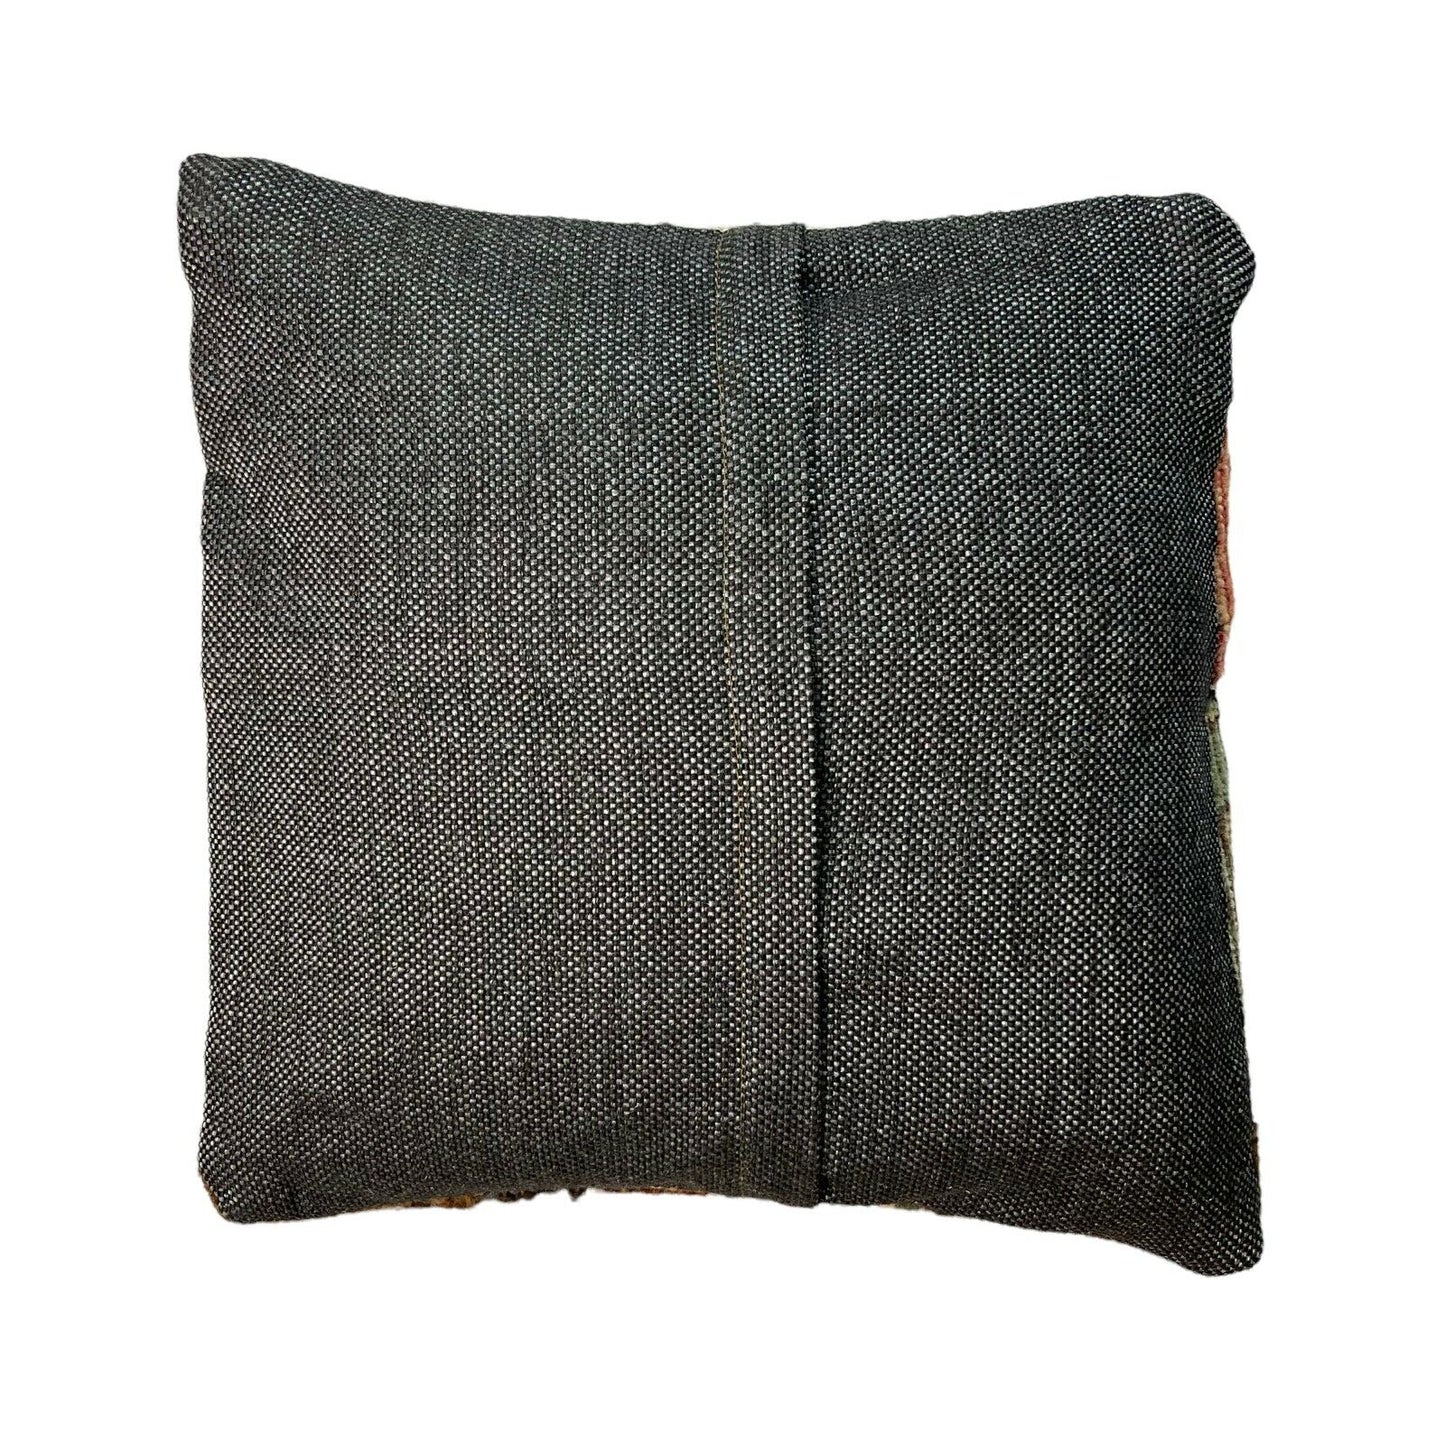 40 x 40 cm  , Vintage Turkish Cushion Cover ,  Vintage Handgemachte Kissenbezug